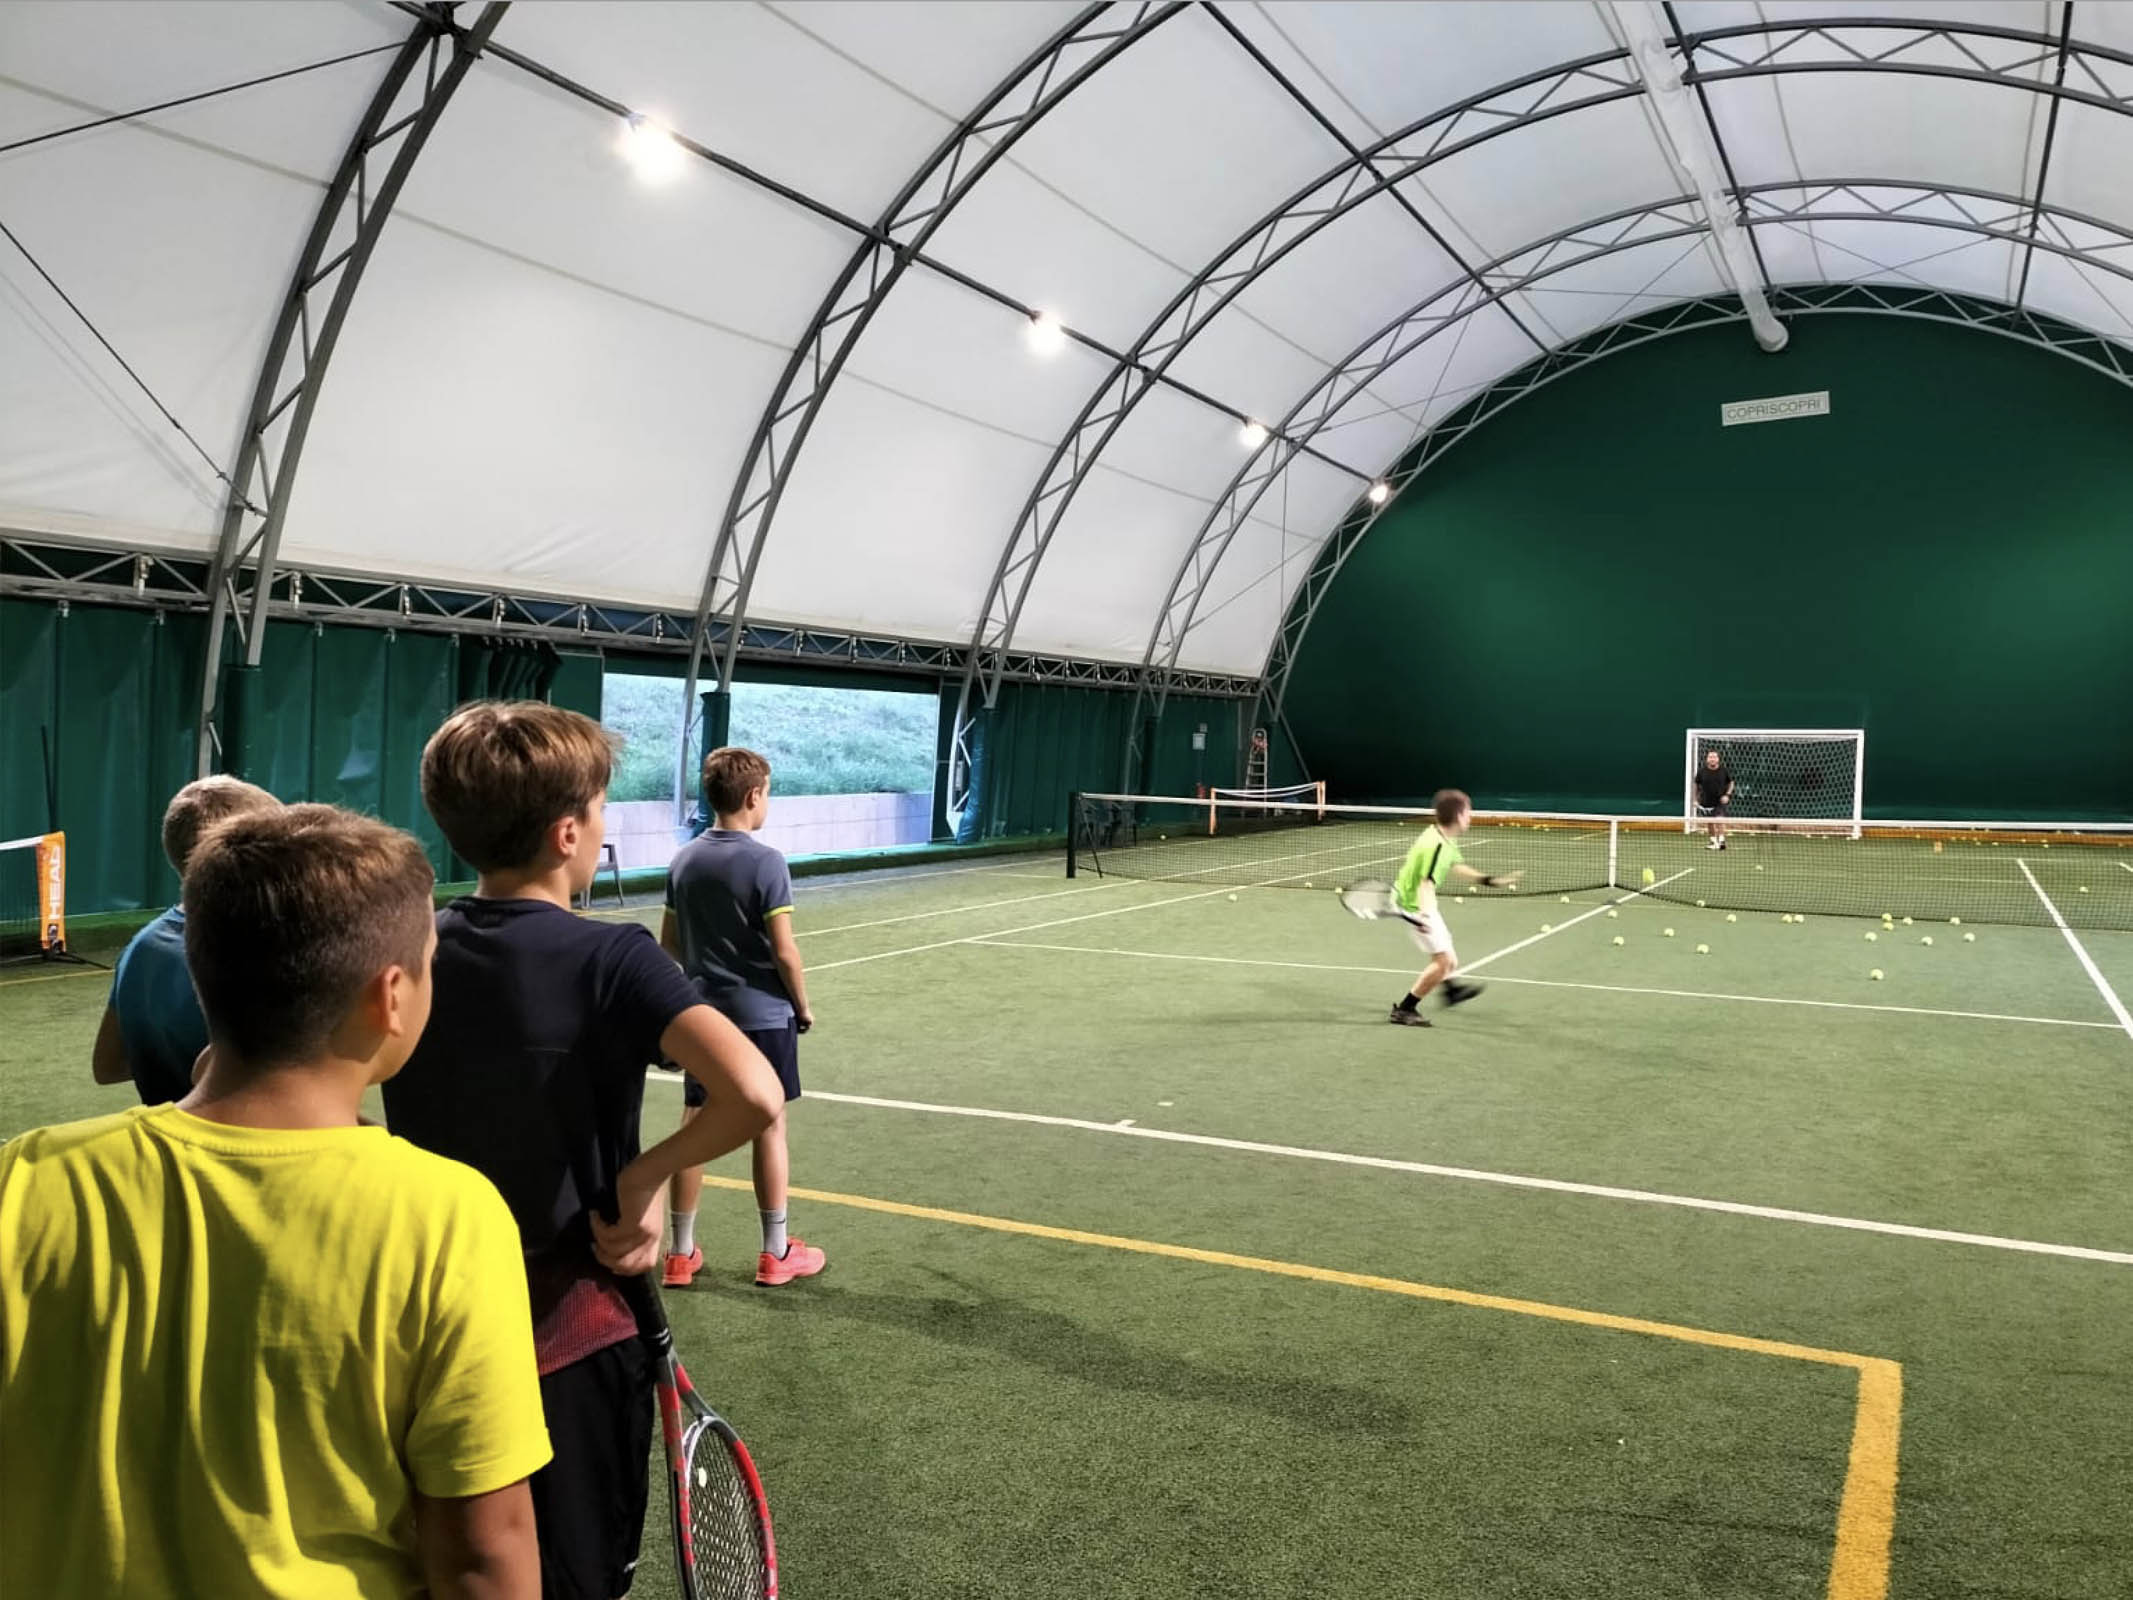 Tennis Club  Anghiari <br>
aderisce alla Carta Etica dello Sport